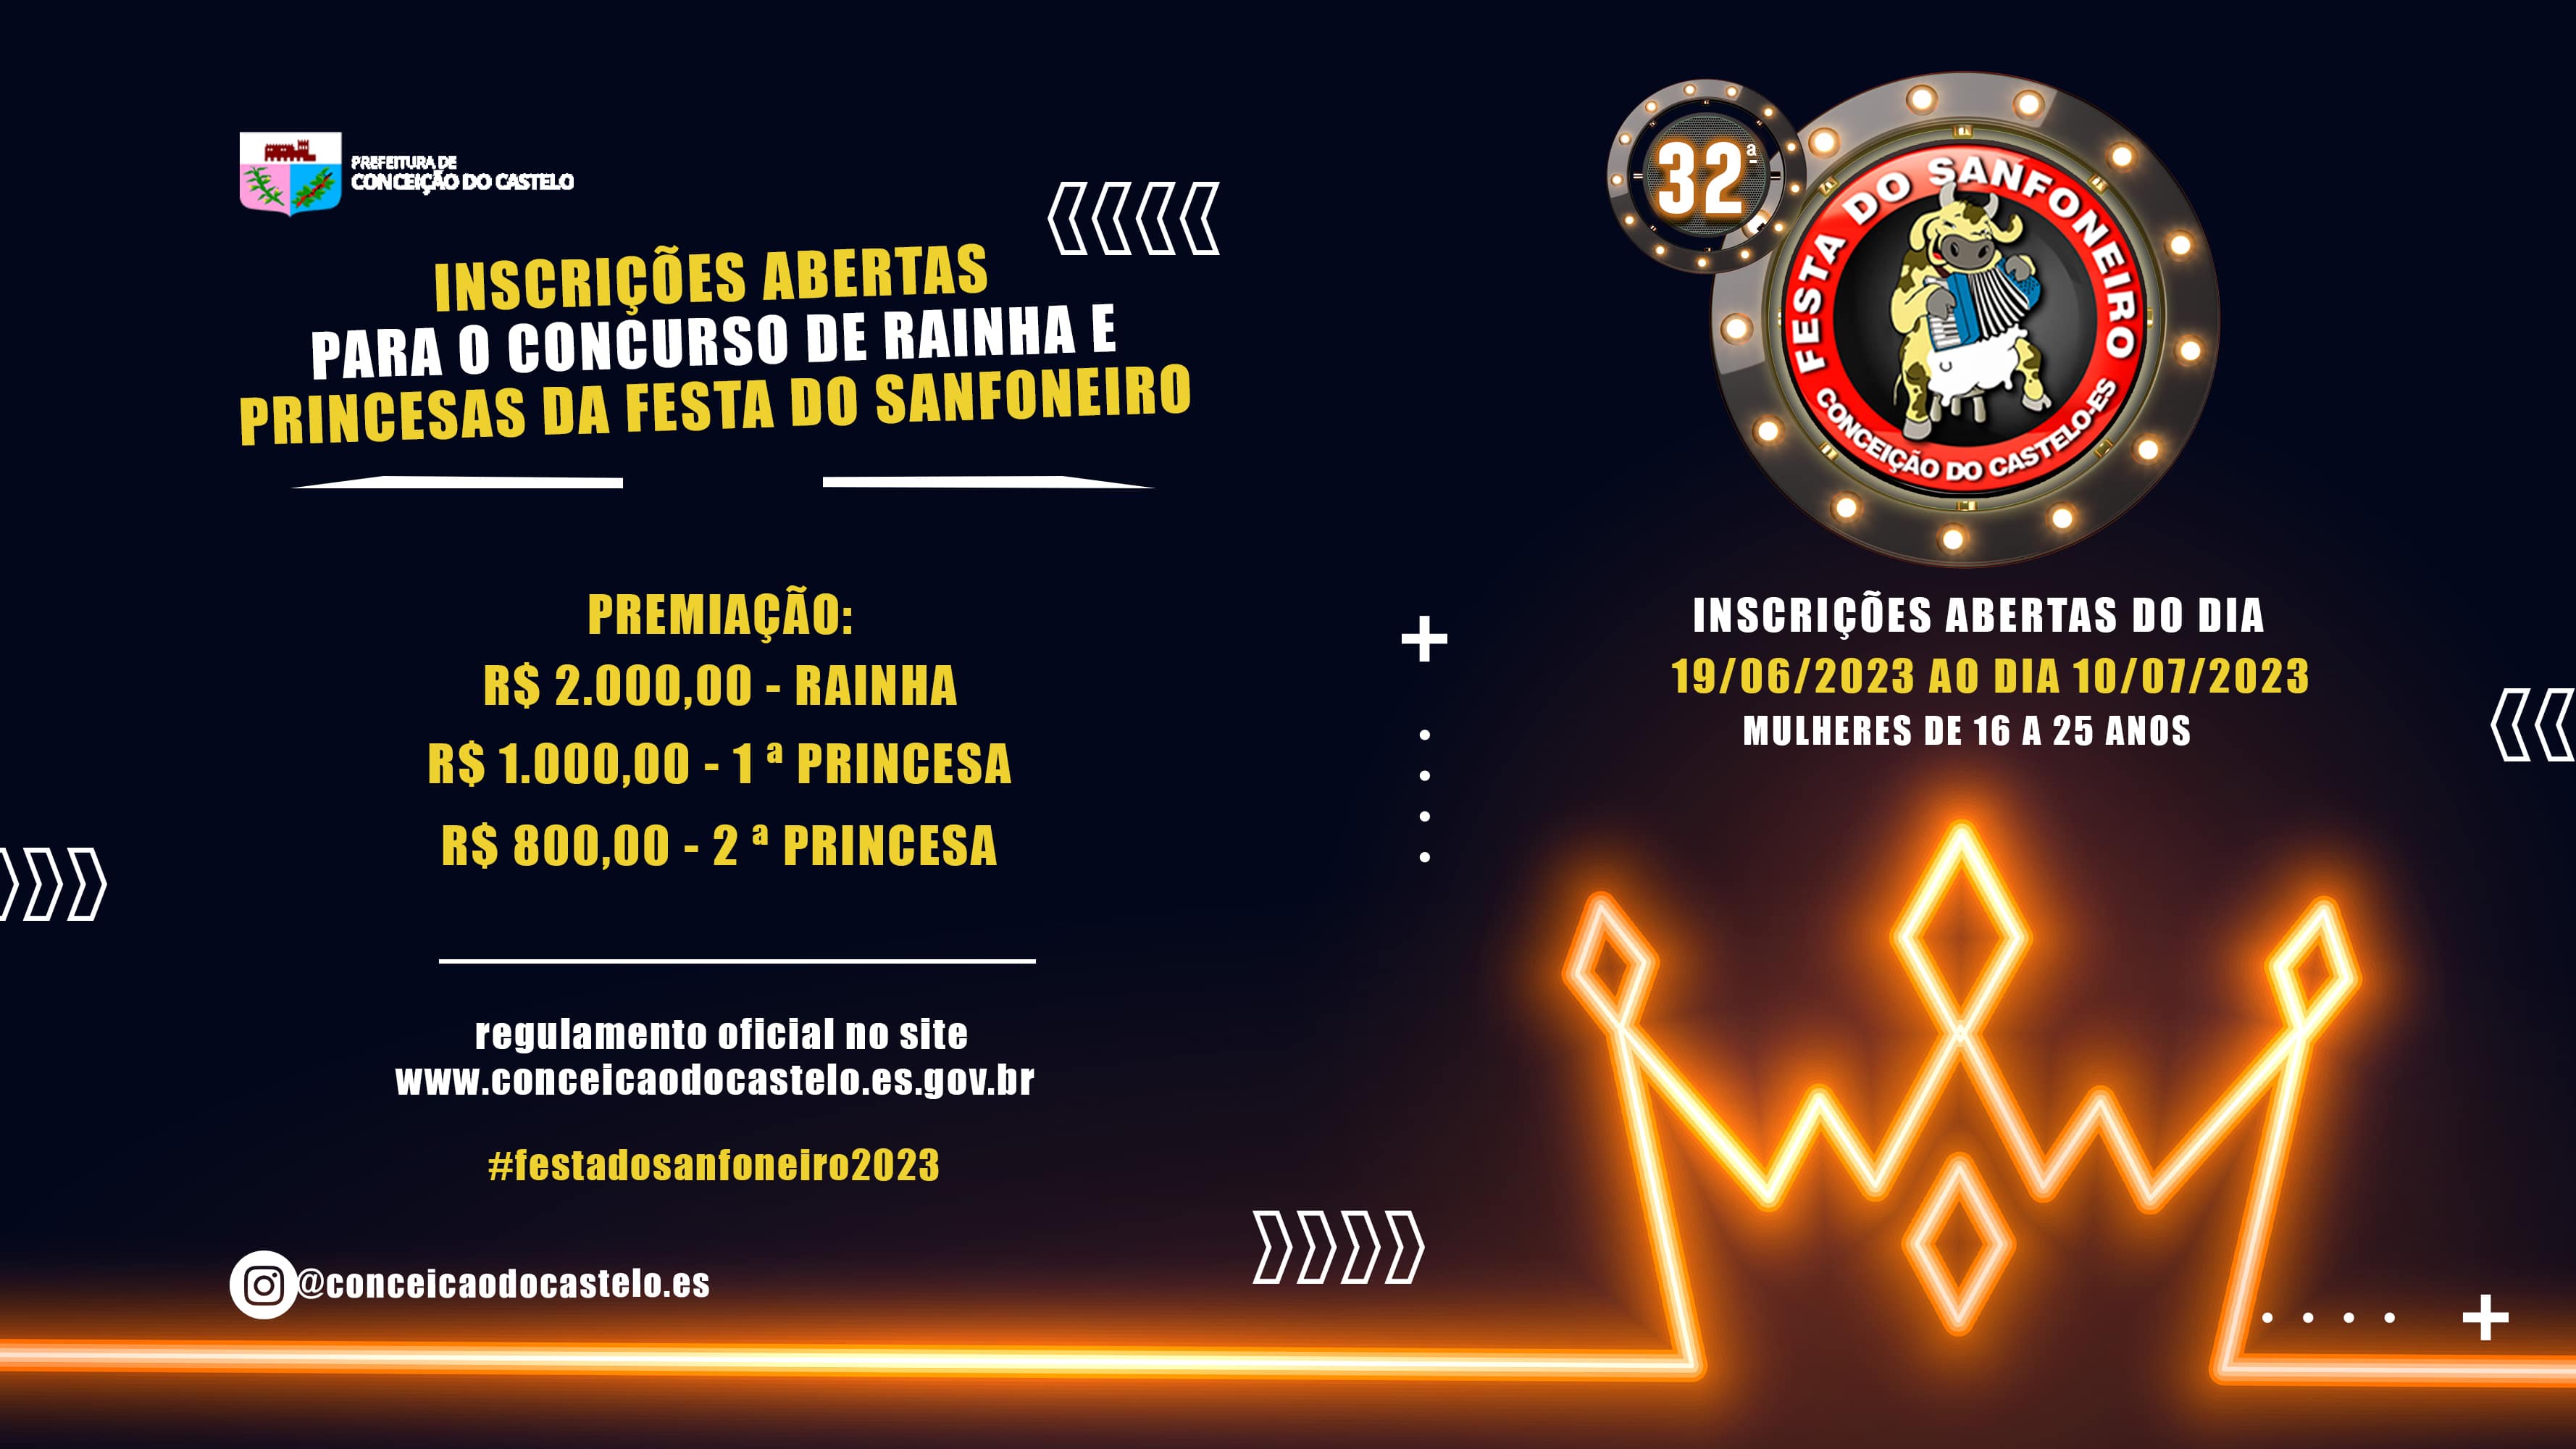 INSCRIÇÕES ABERTAS PARA O CONCURSO RAINHA FESTA DO SANFONEIRO SANFONEIRO 2023